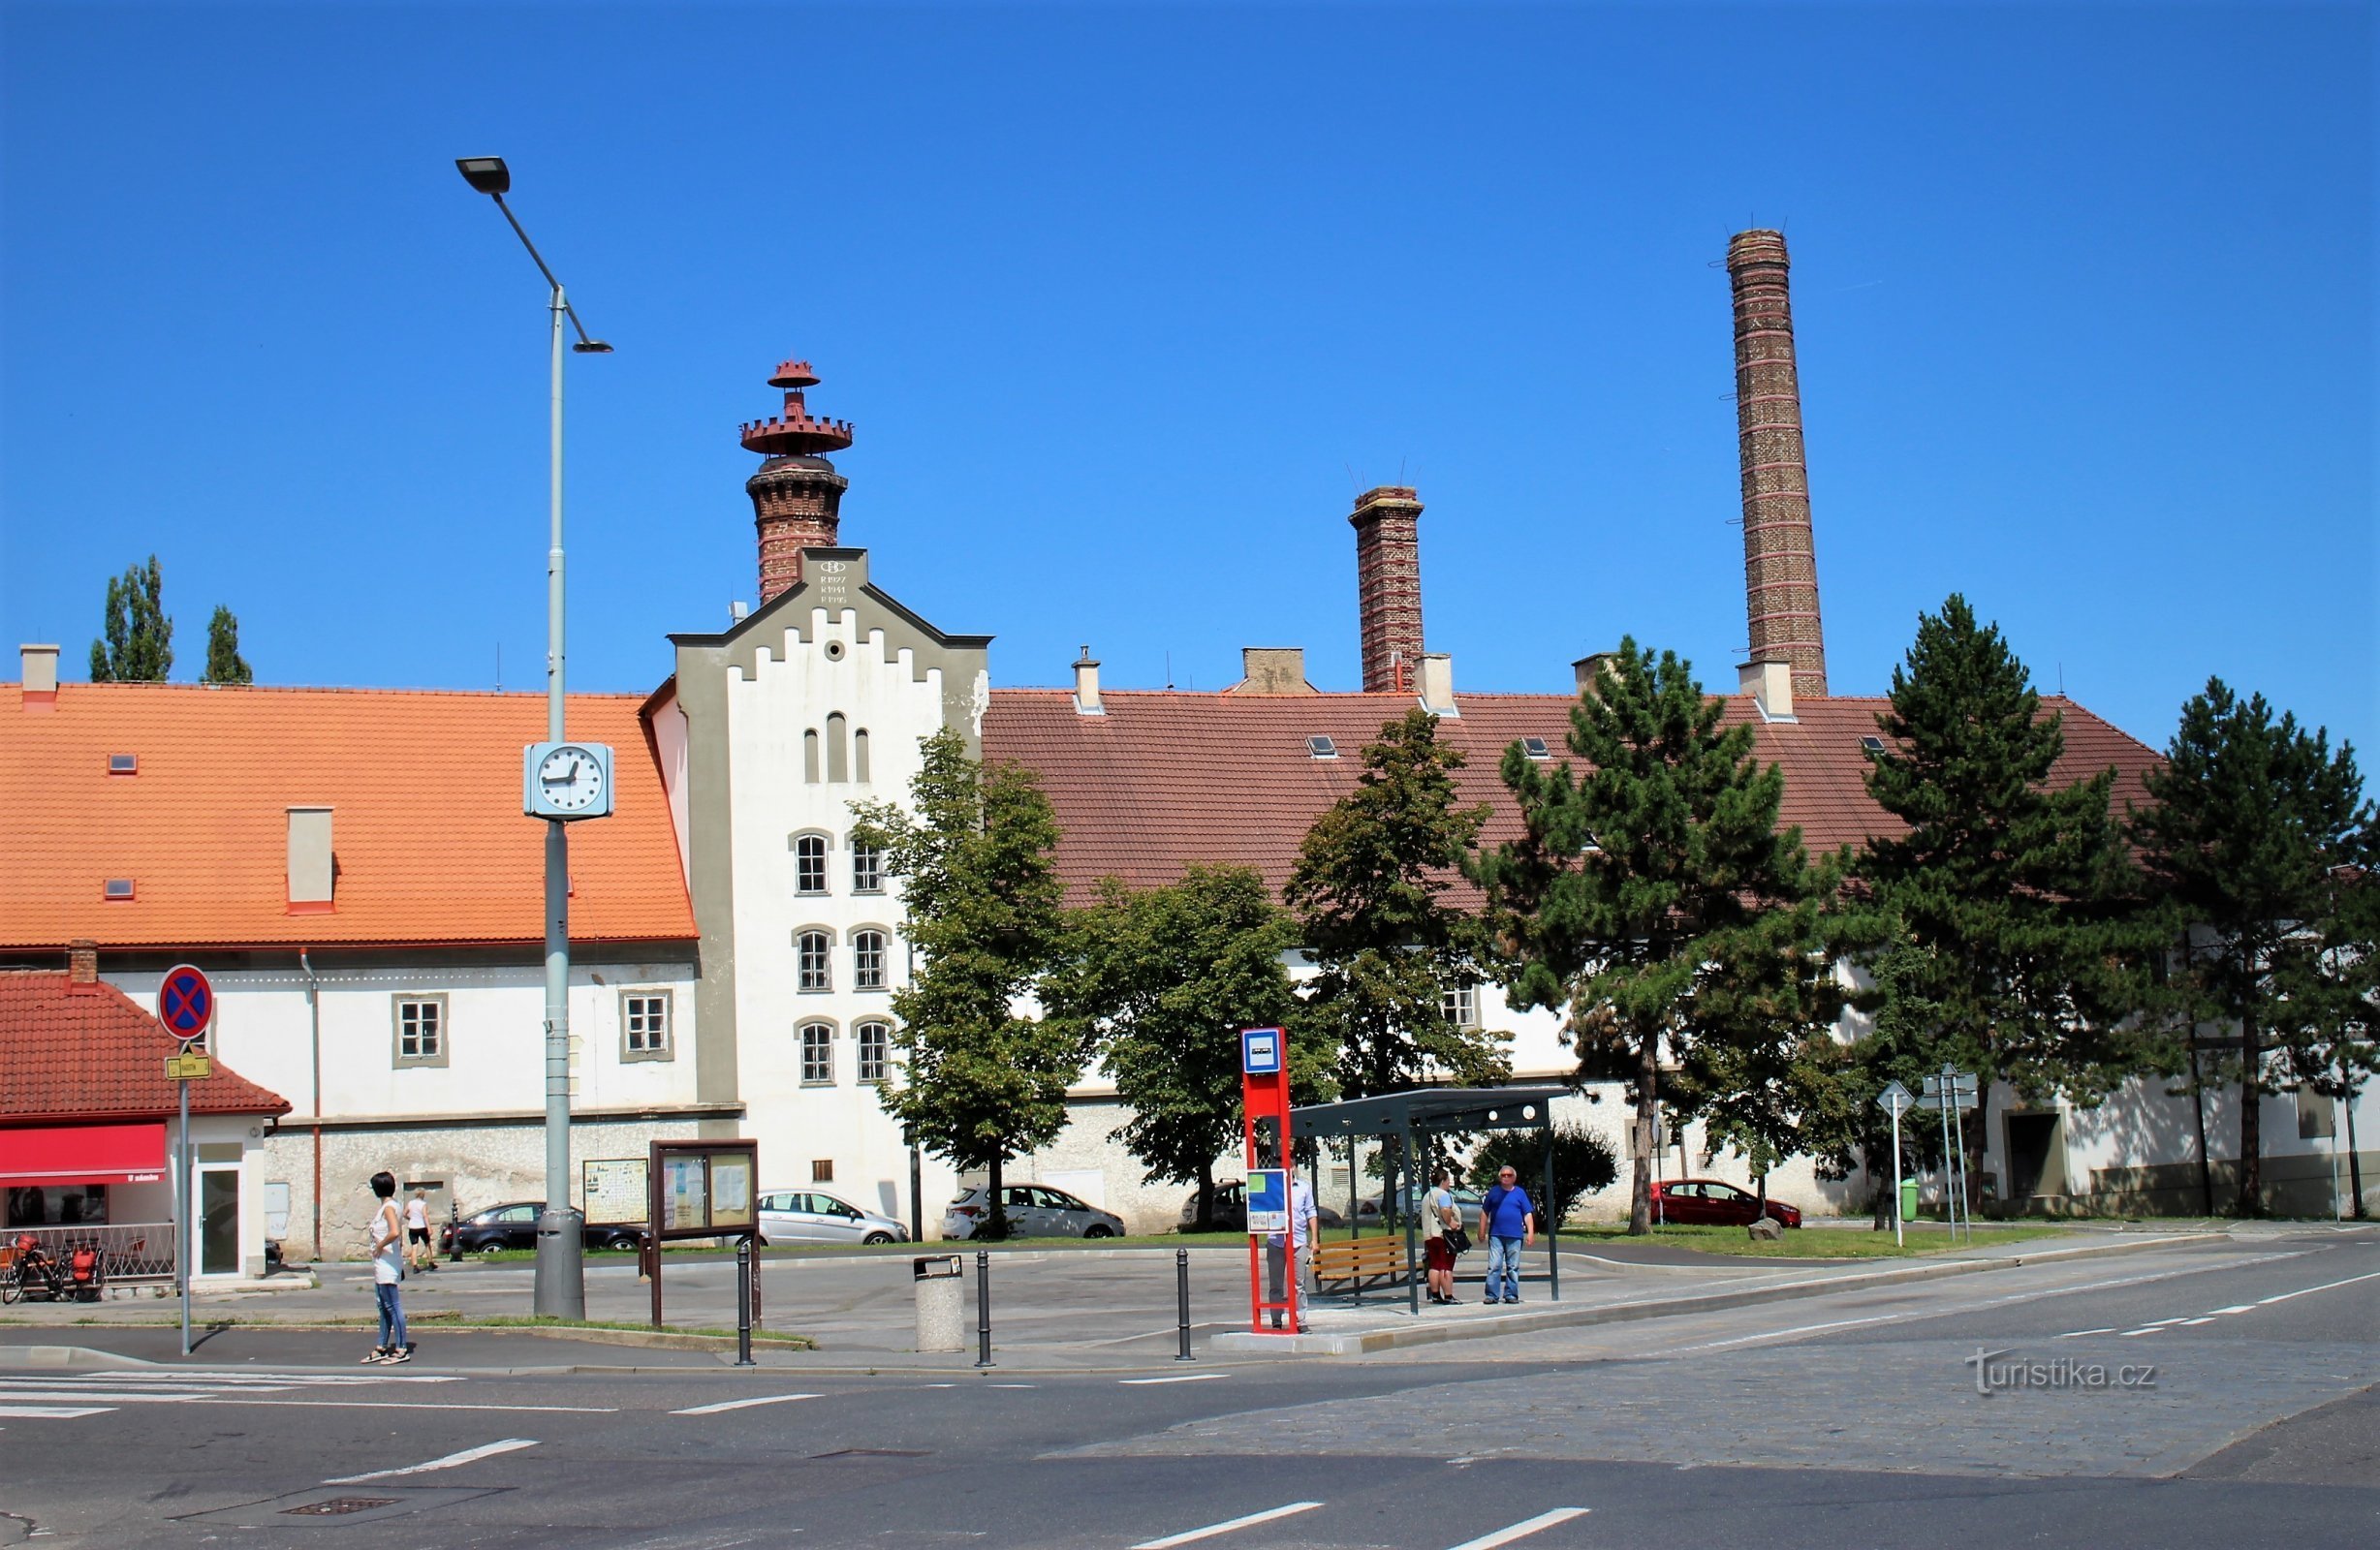 Quảng trường Zbraslav